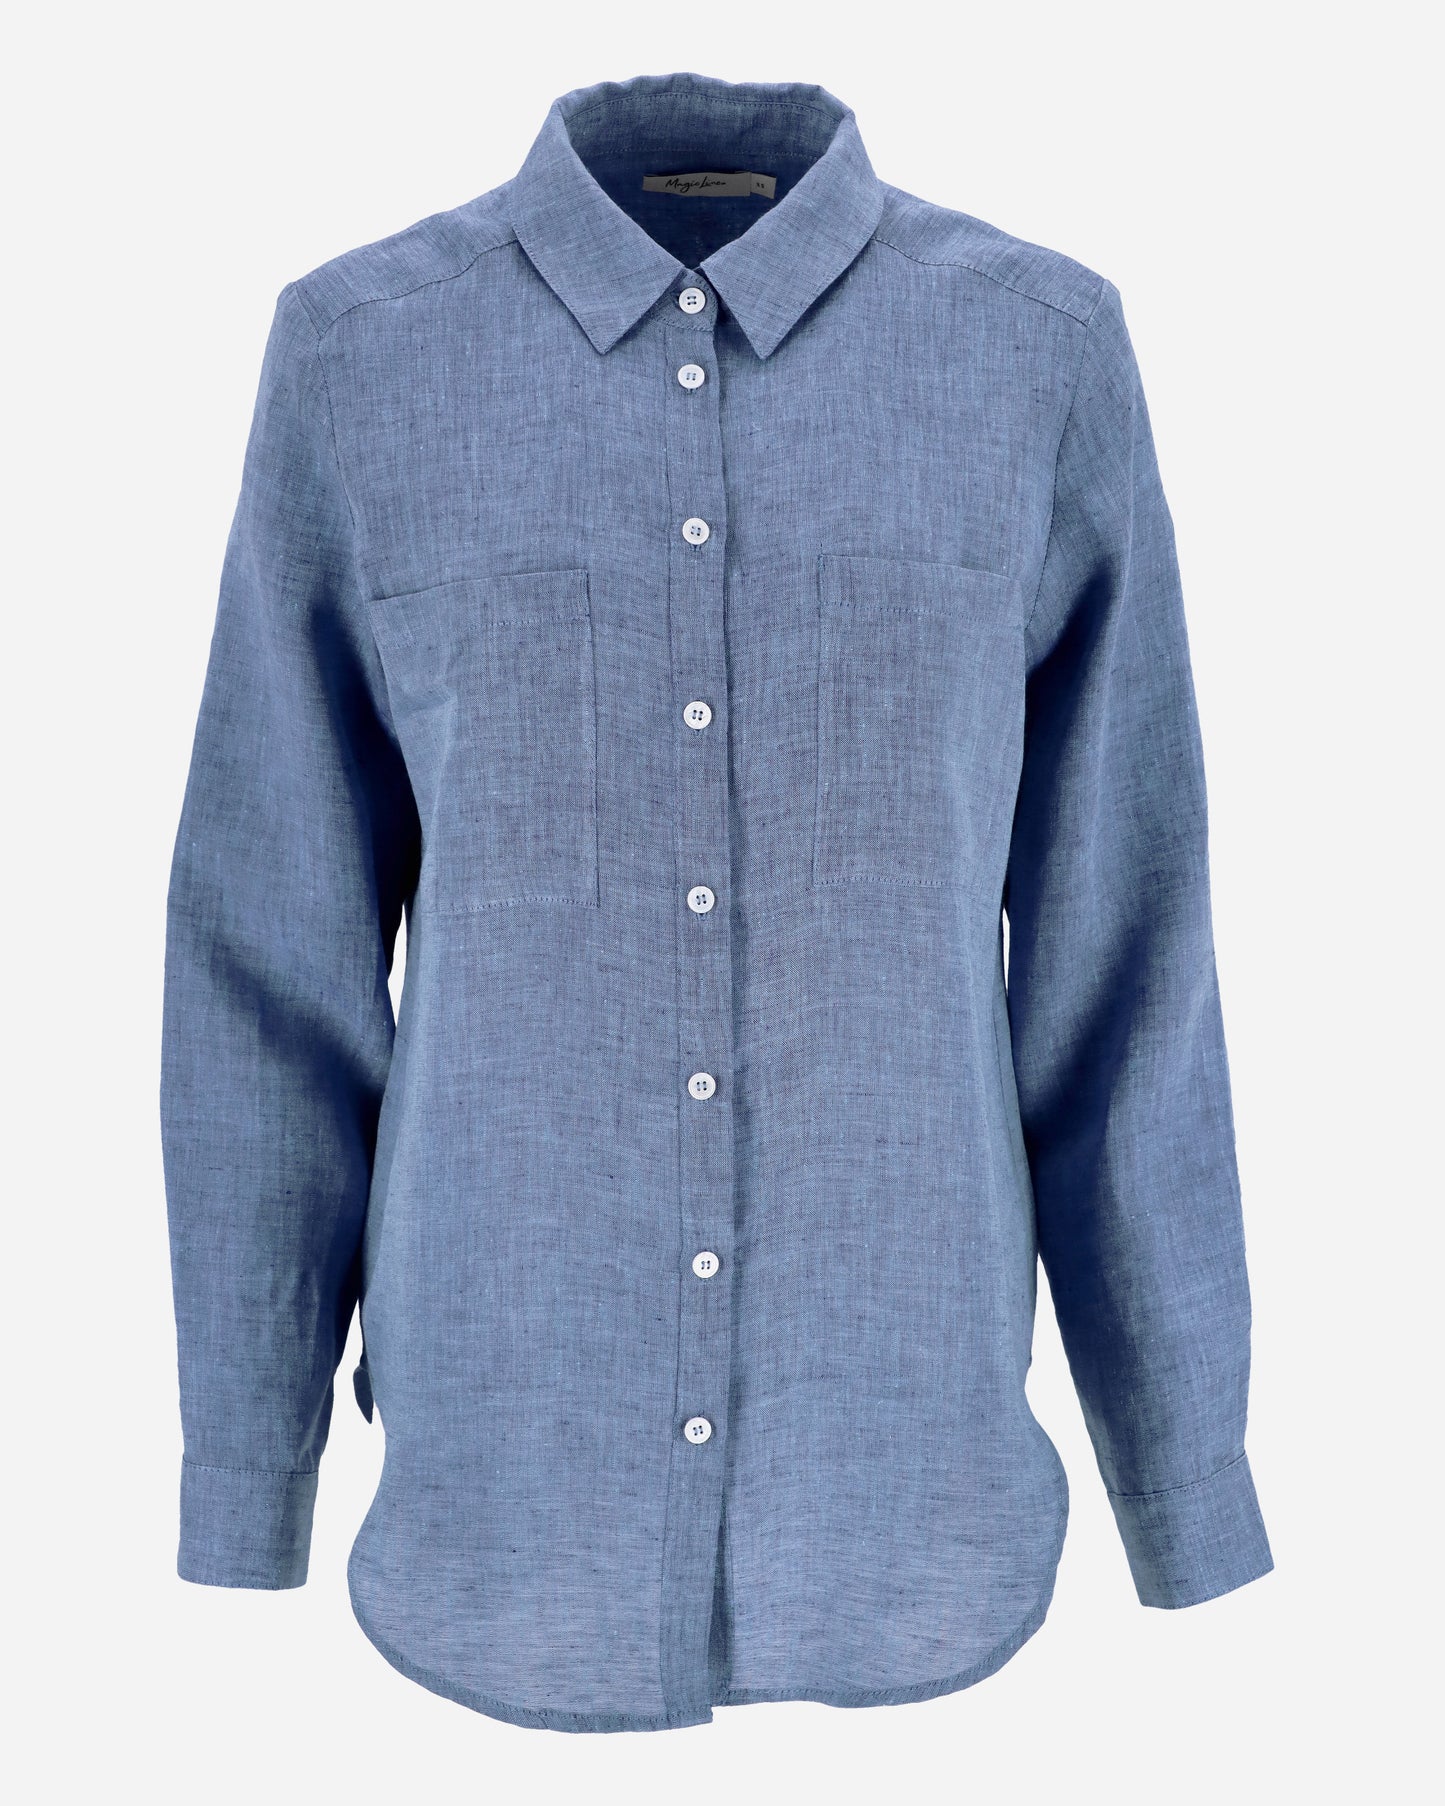 Long-sleeved linen shirt CALPE in Denim chambray - MagicLinen